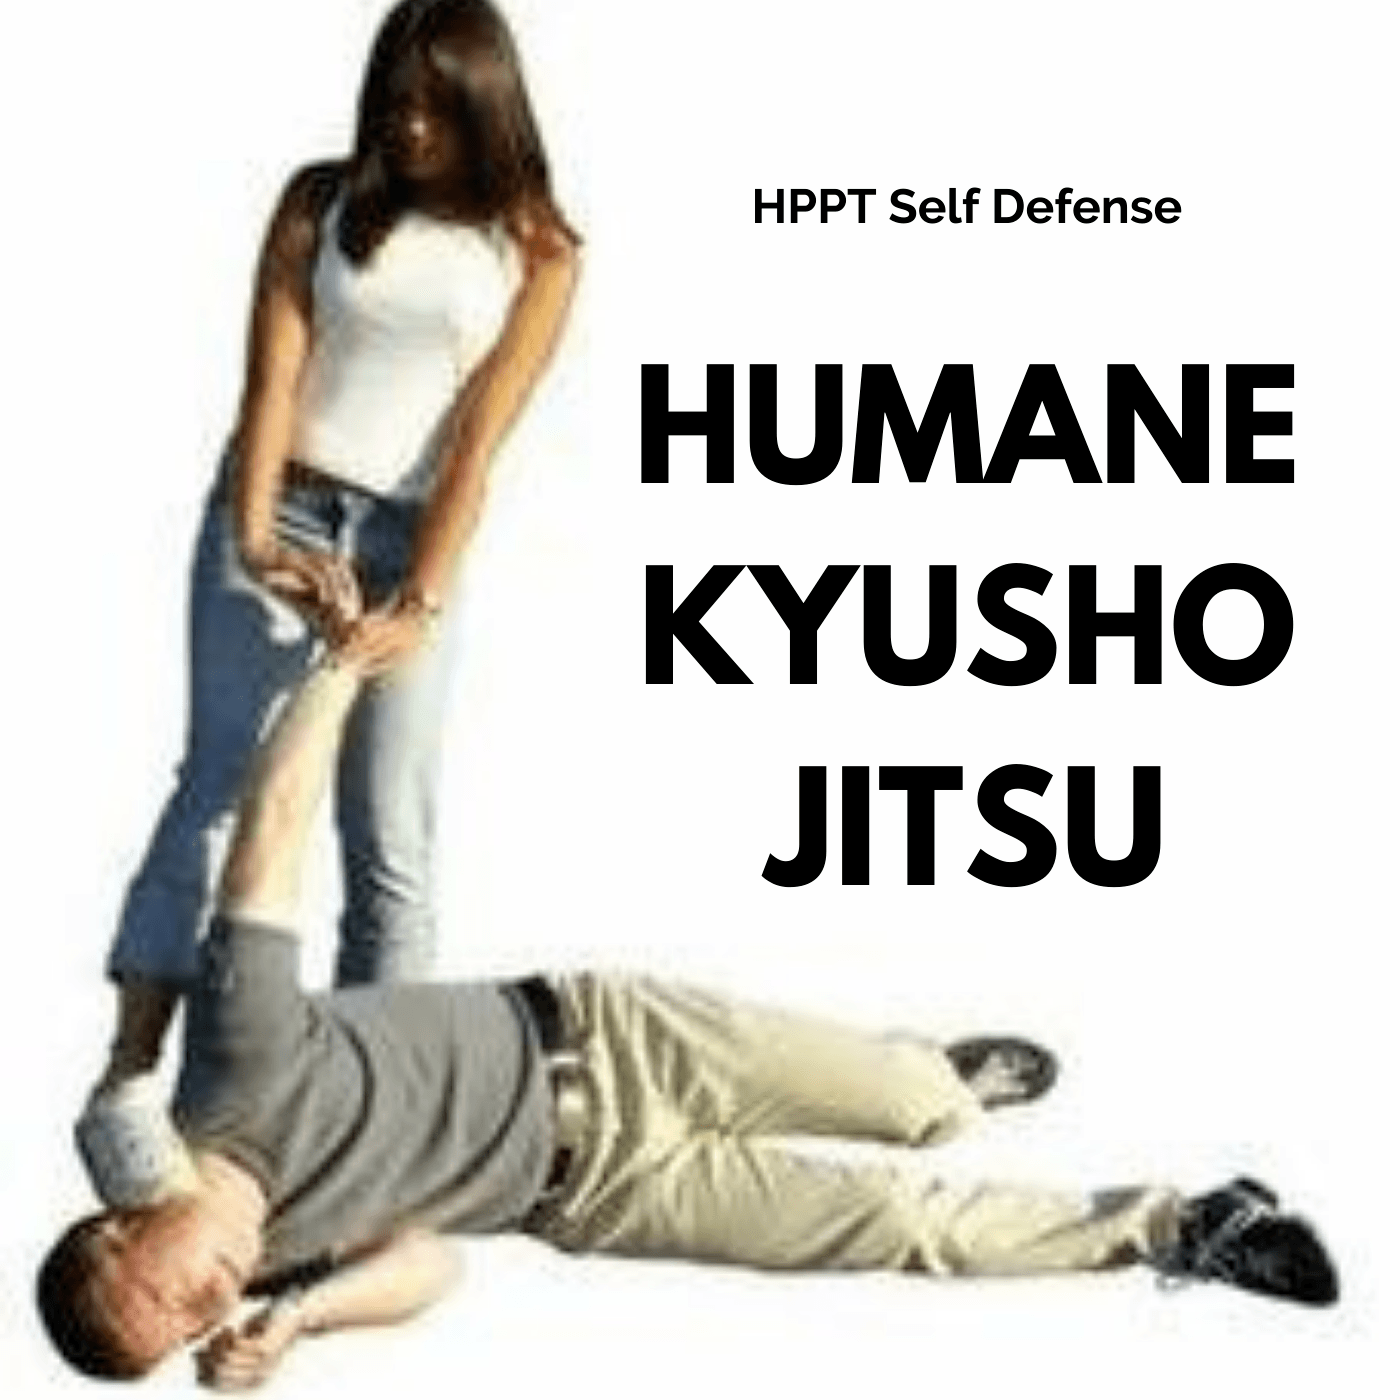 * Humane Kyusho Jitsu